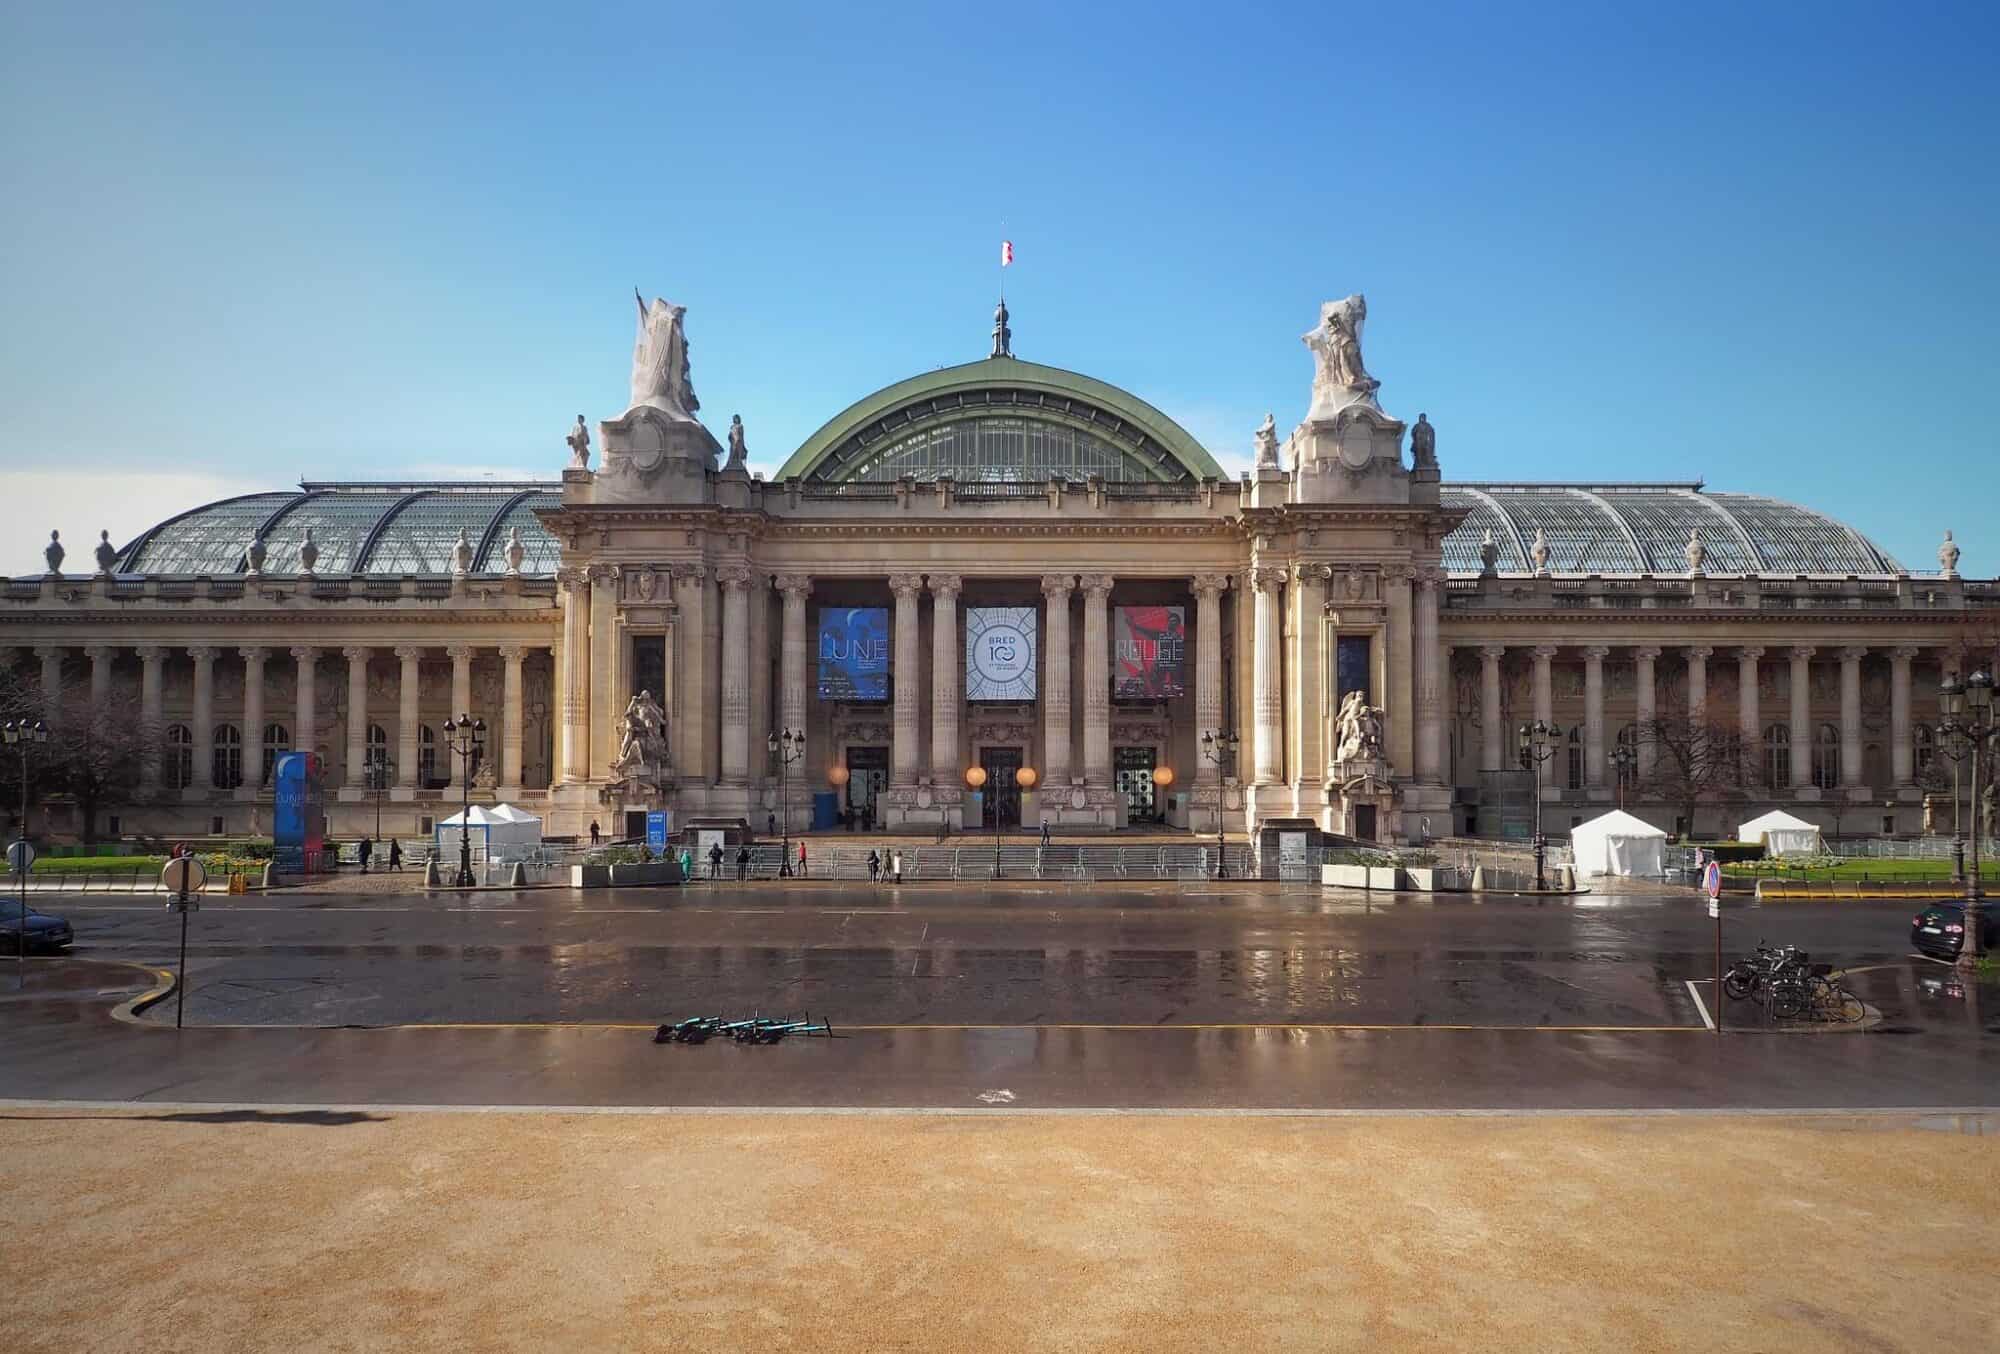 The facade of the the Grand Palais in Paris.